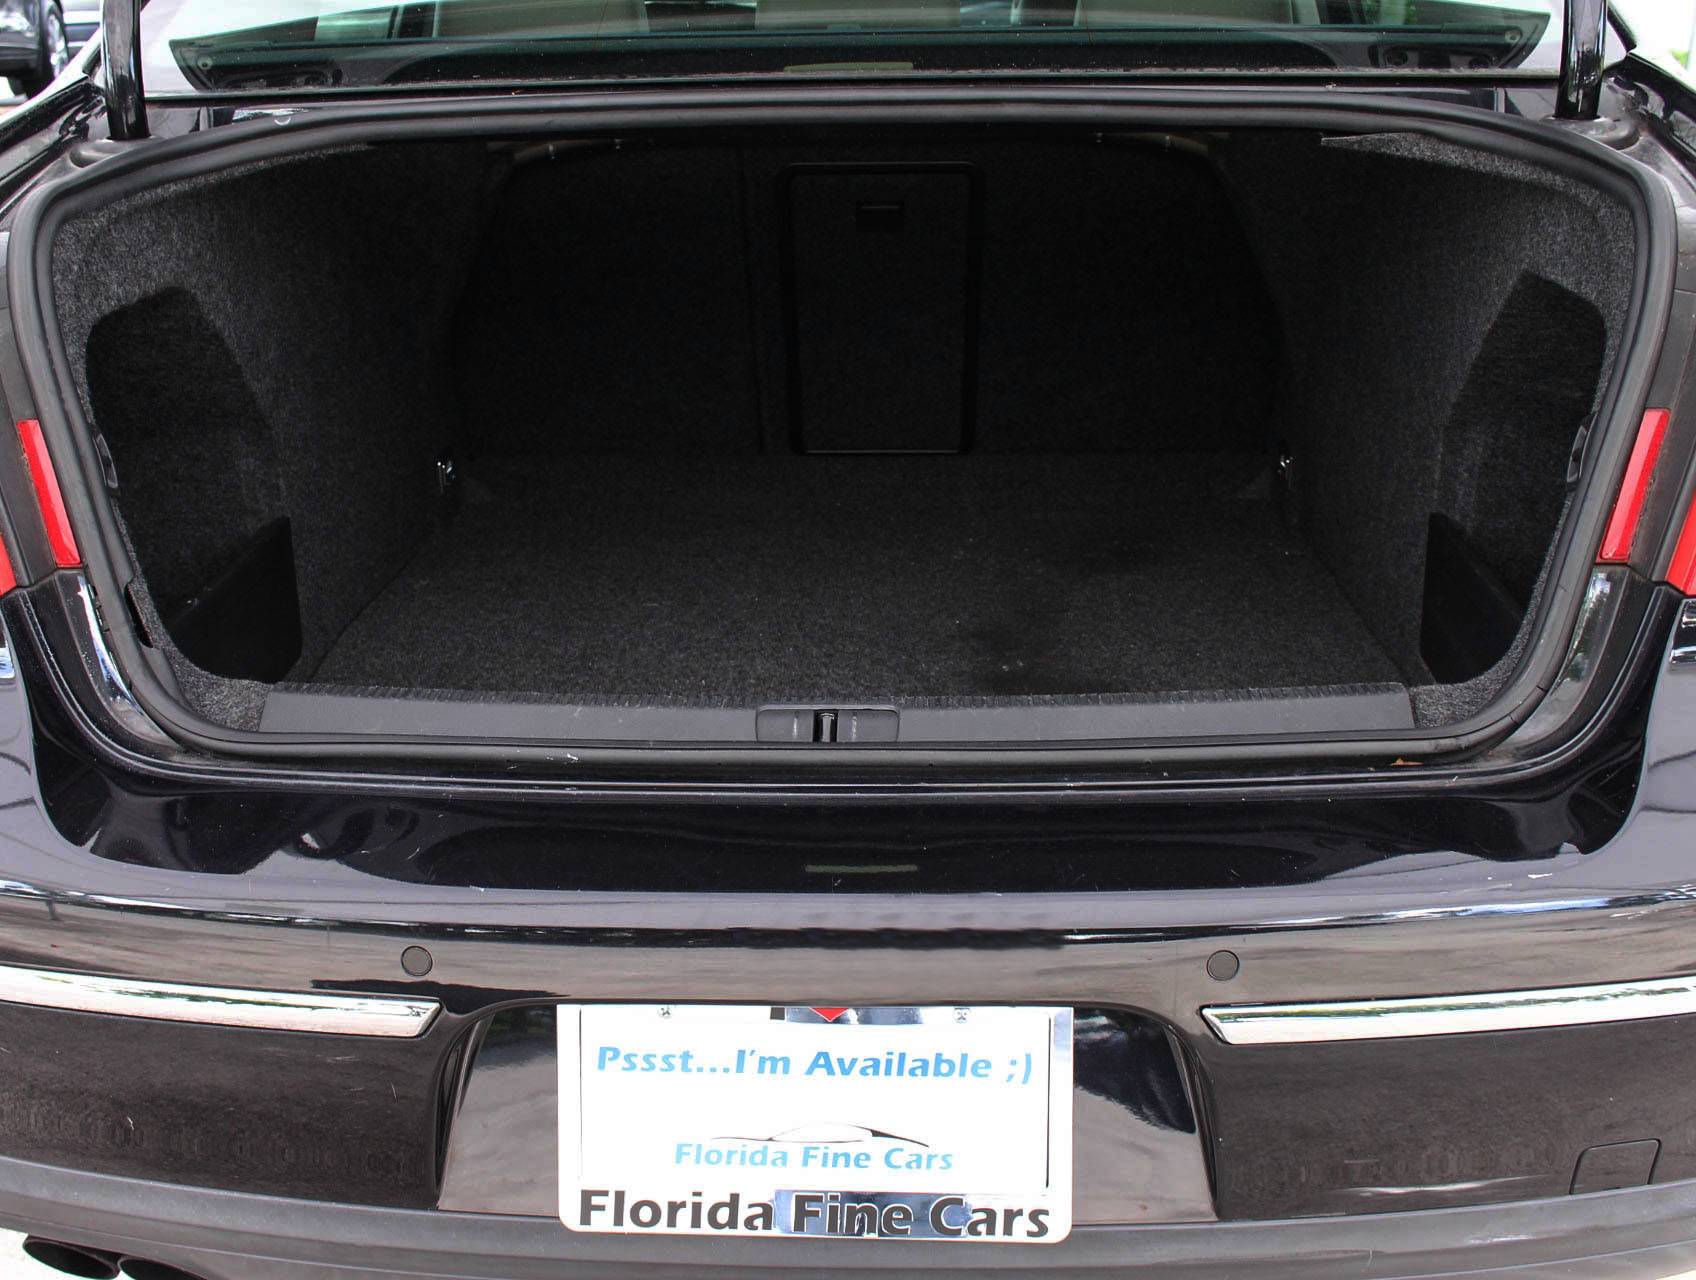 Florida Fine Cars - Used VOLKSWAGEN PASSAT 2008 MIAMI LUX